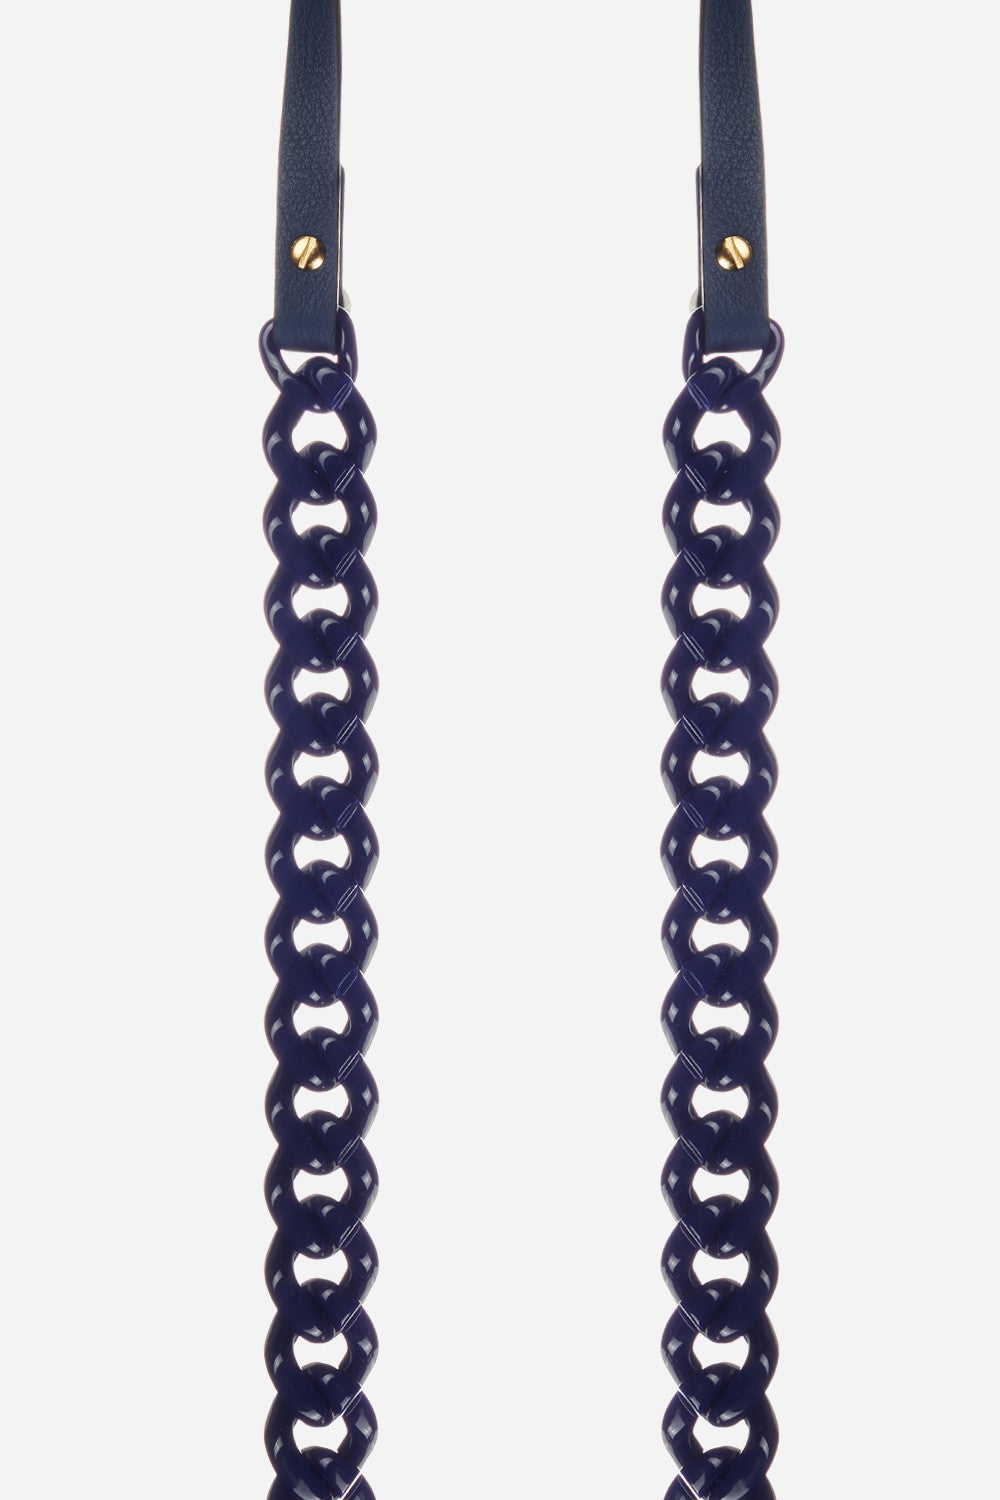 Chaine Longue Giorgia Bleu 120 cm